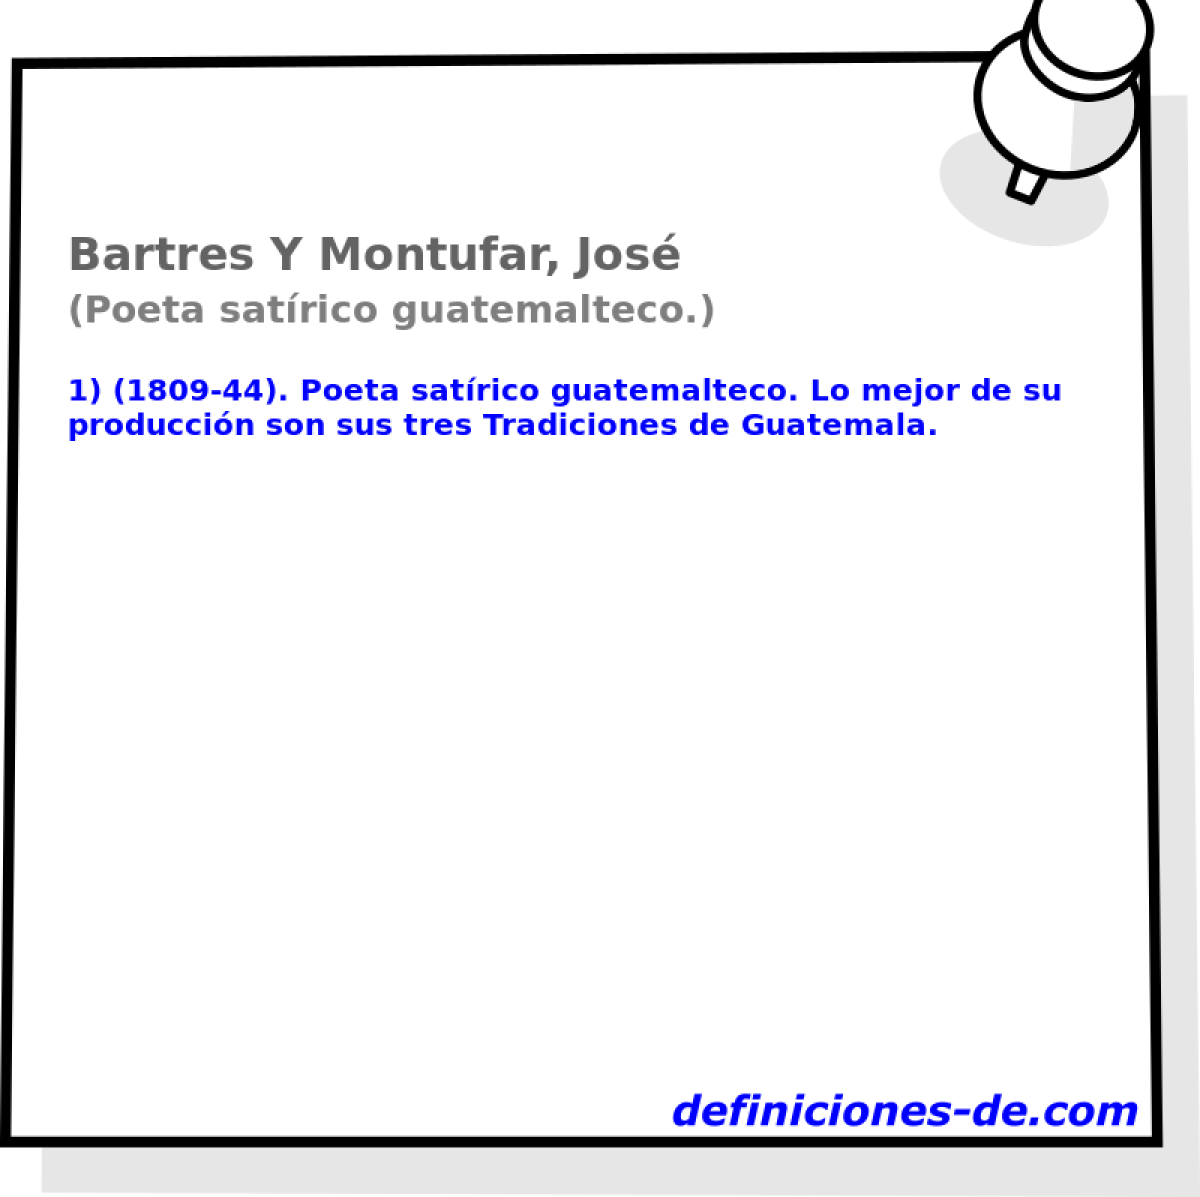 Bartres Y Montufar, Jos (Poeta satrico guatemalteco.)